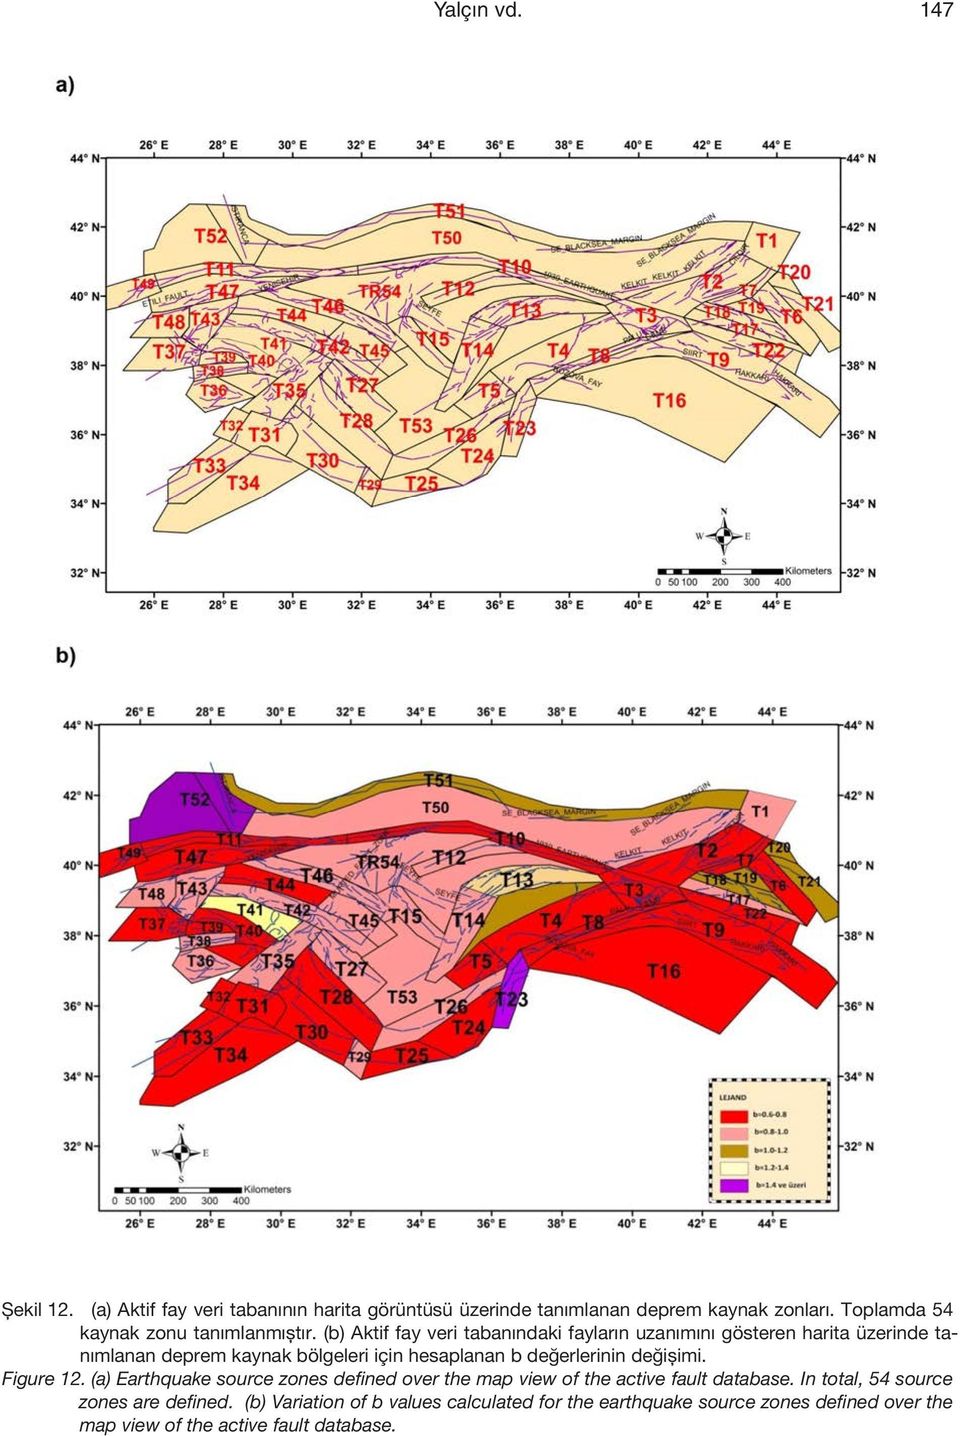 (b) Aktif fay veri tabanındaki fayların uzanımını gösteren harita üzerinde tanımlanan deprem kaynak bölgeleri için hesaplanan b değerlerinin